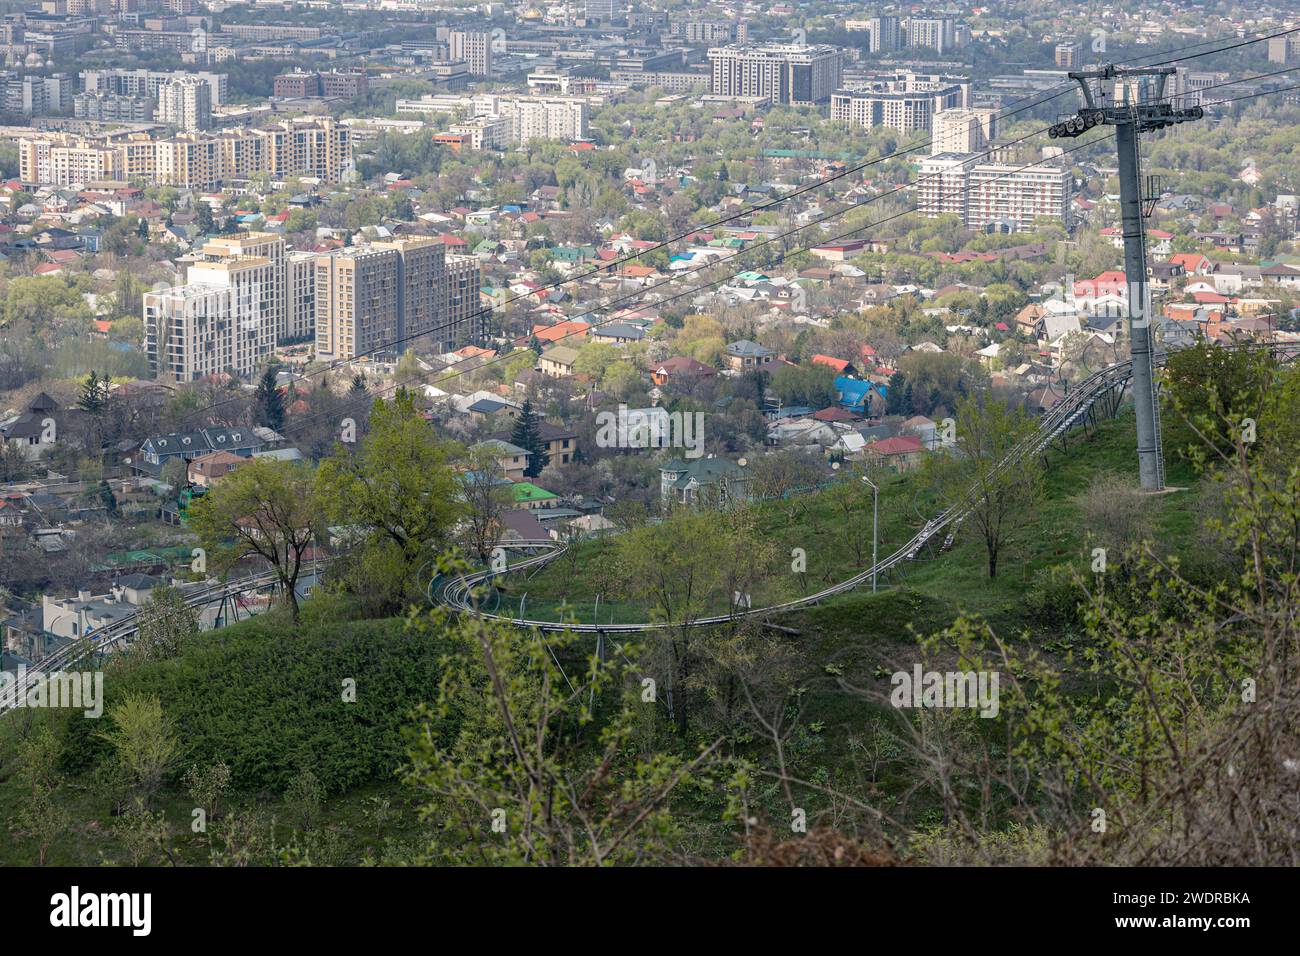 Leerer Sessellift führt zum Vergnügungspark Kok Tobe und der Rodelbahn am Berg. Grünes Gras und Büsche, sonniger Frühlingstag. Sehen Sie die Gebäude Almaty City Stockfoto